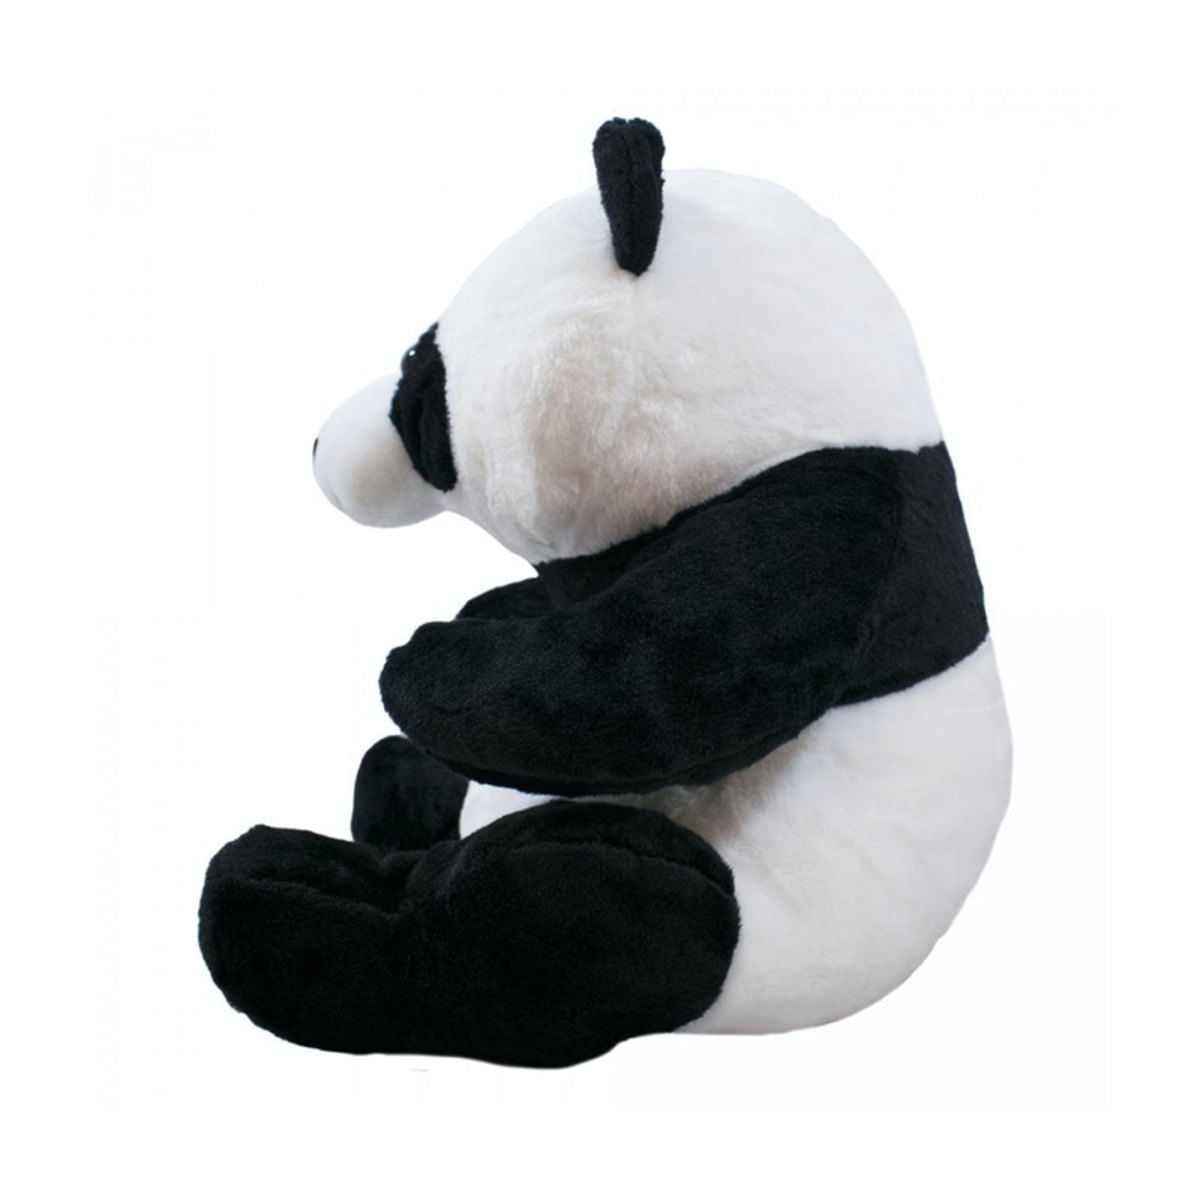 1 Peça Poliéster Pelúcia Fofo Desenho Panda Multifuncional Brinquedo De  Pelúcia Para Casa